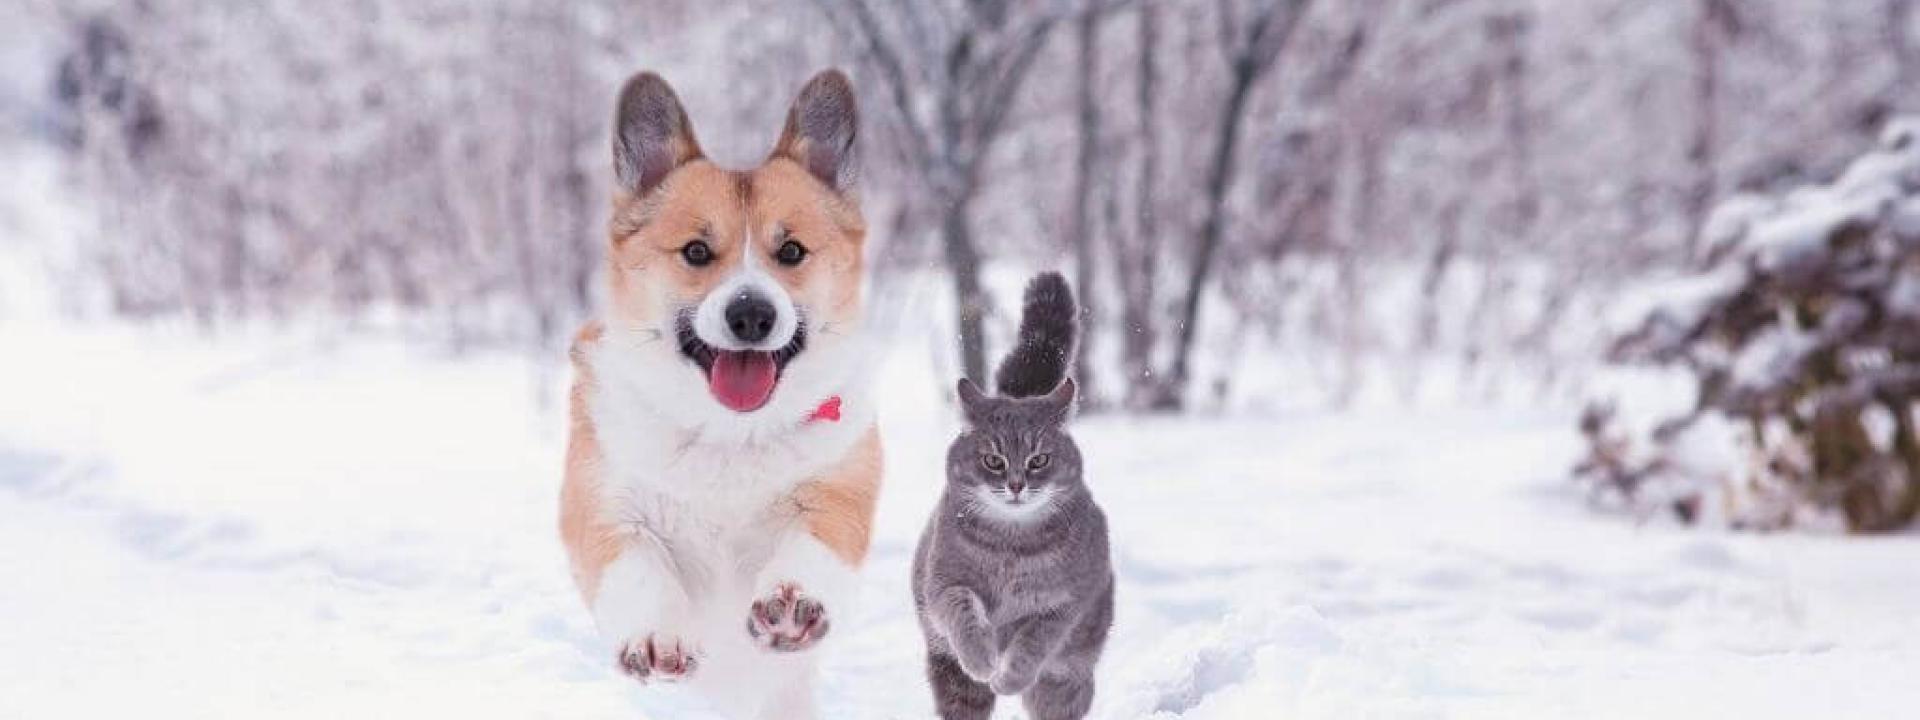 winter-activities-cats-dogs.jpg